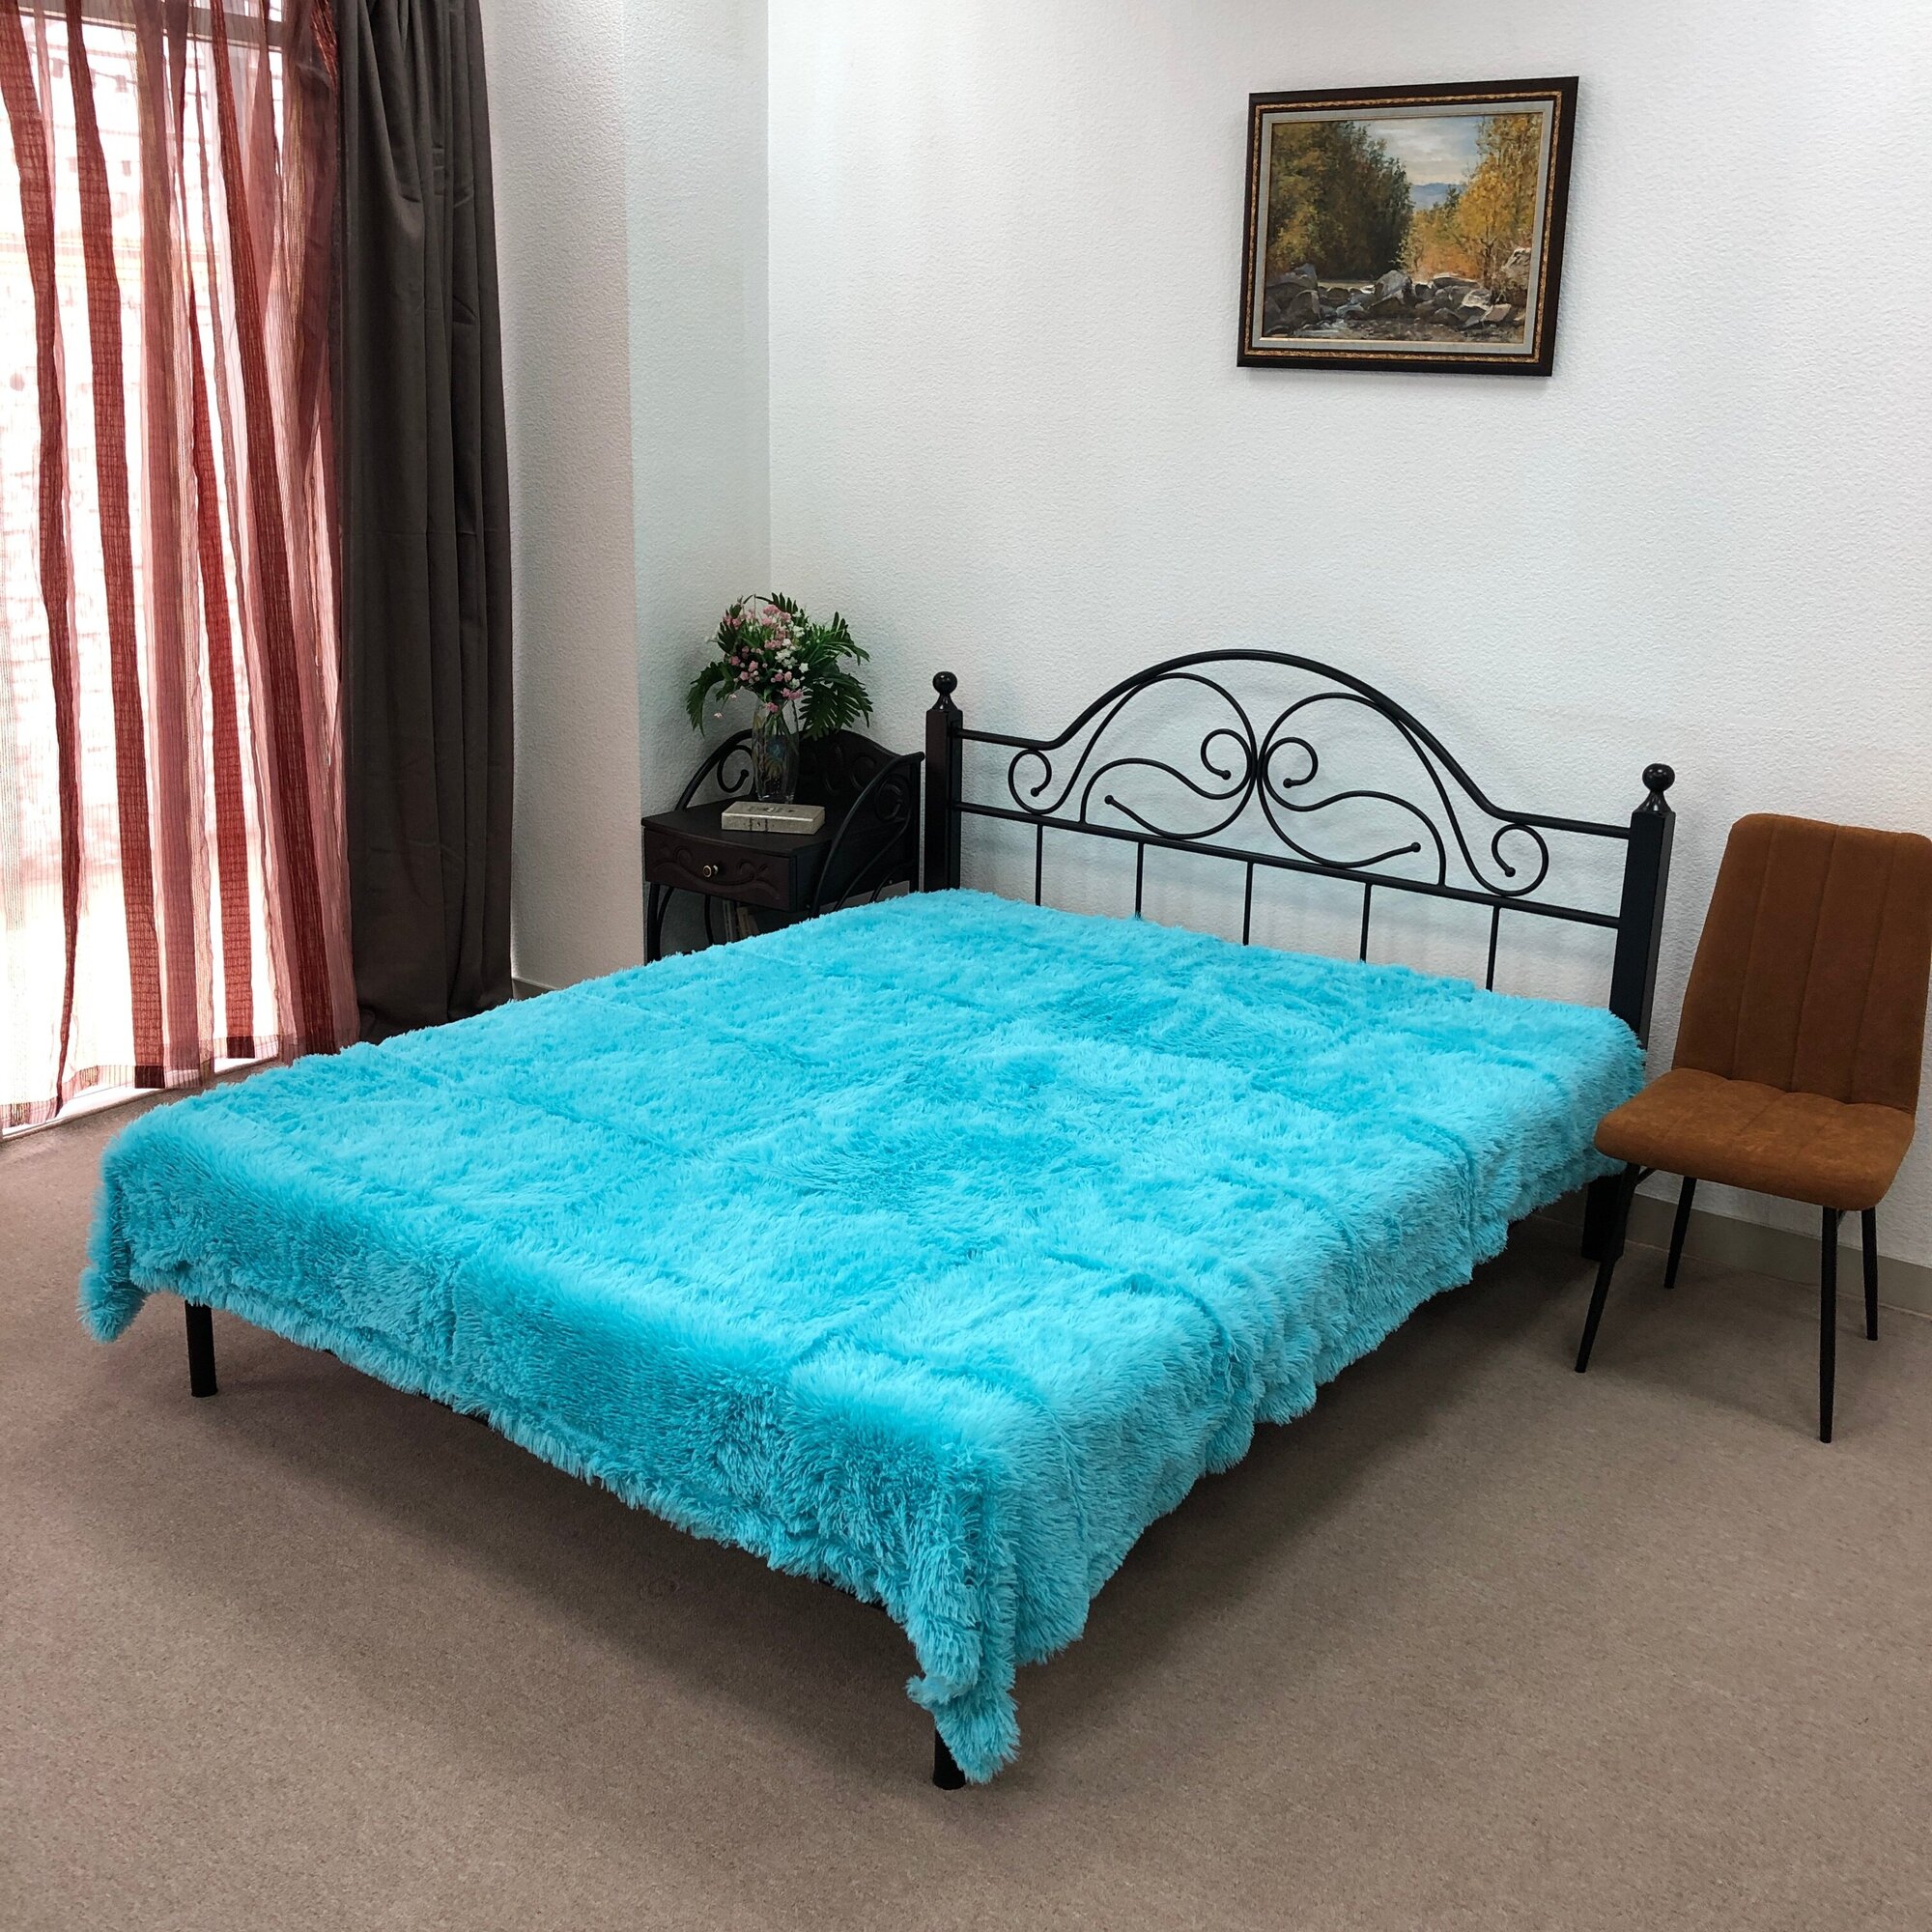 Кровать металлическая 160*200 двуспальная малазийская черная роскошная Кармен поллет